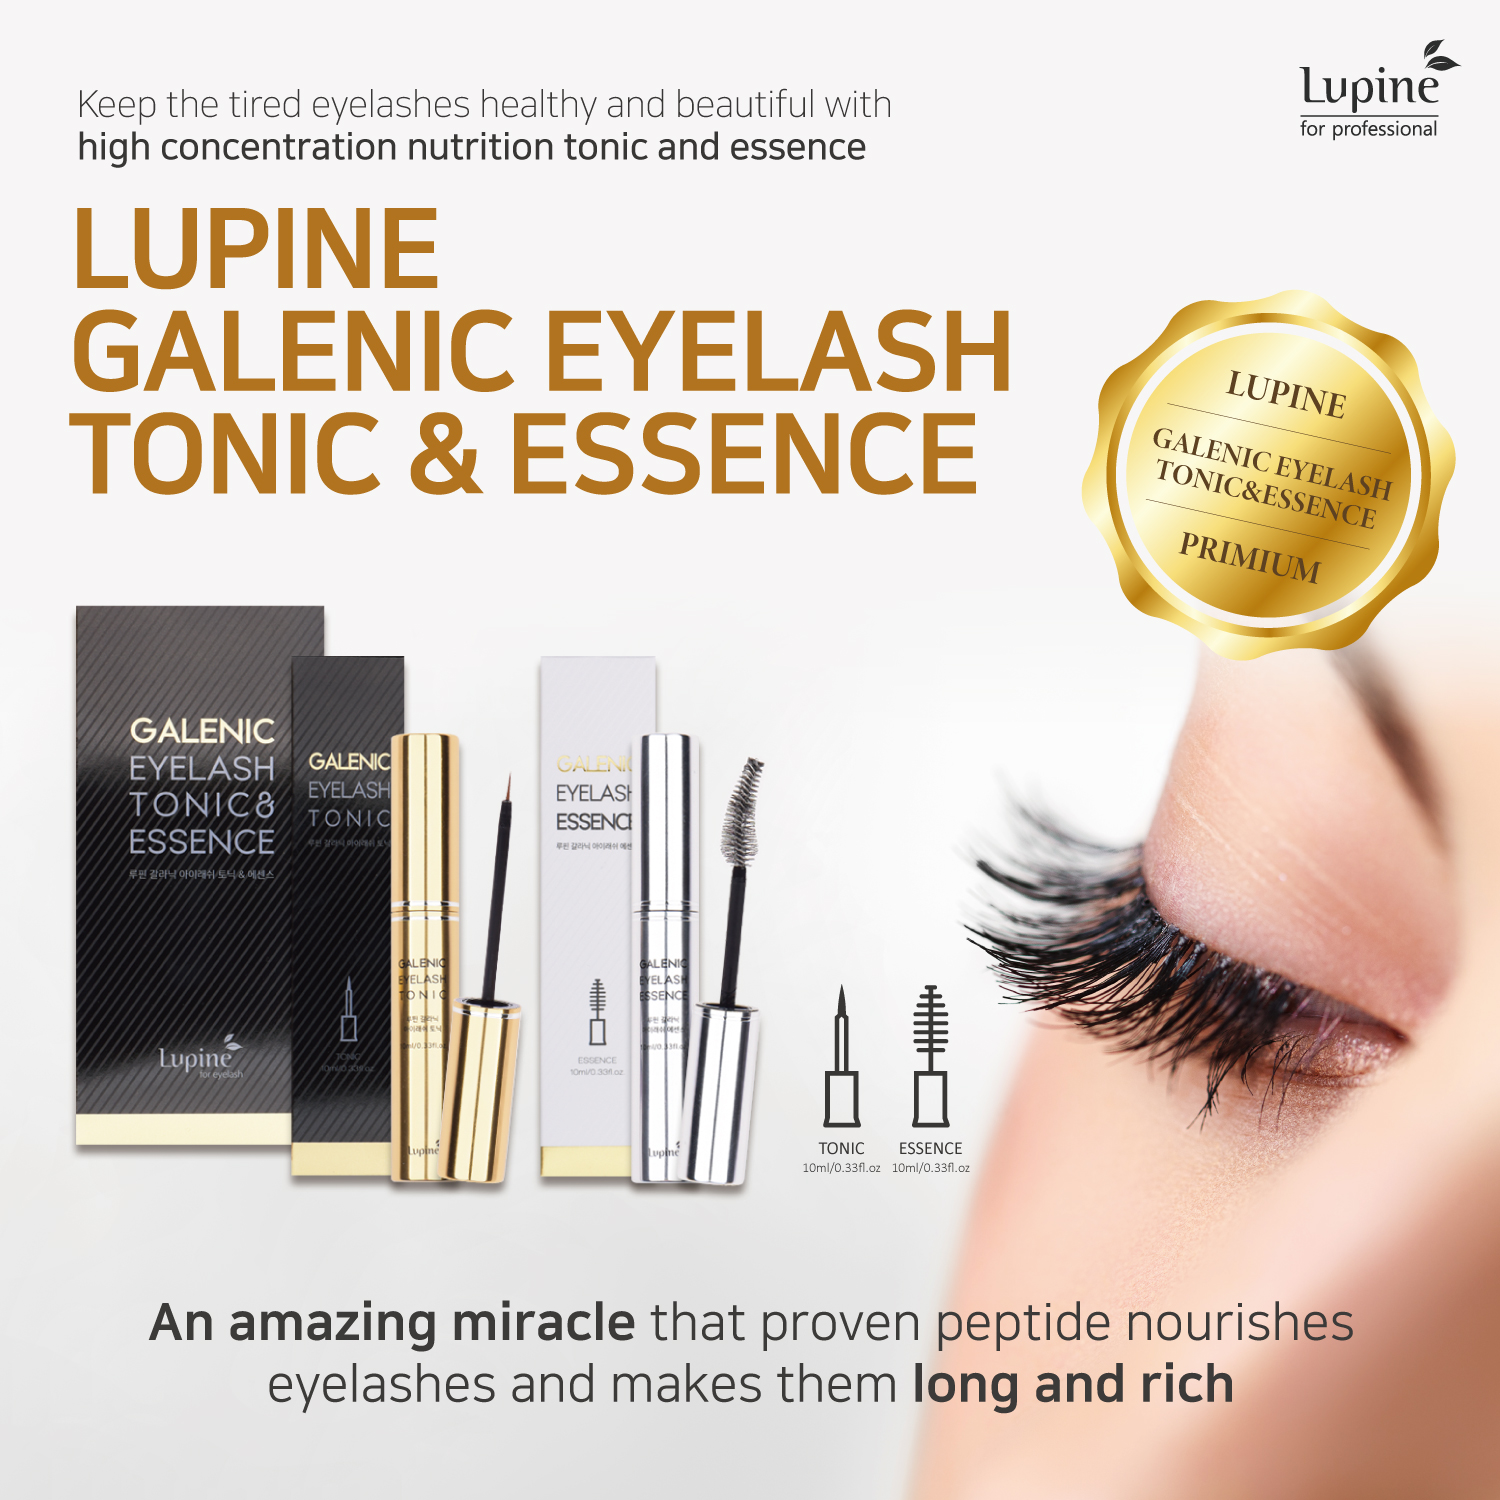 GALENIC eyelash tonic & essence